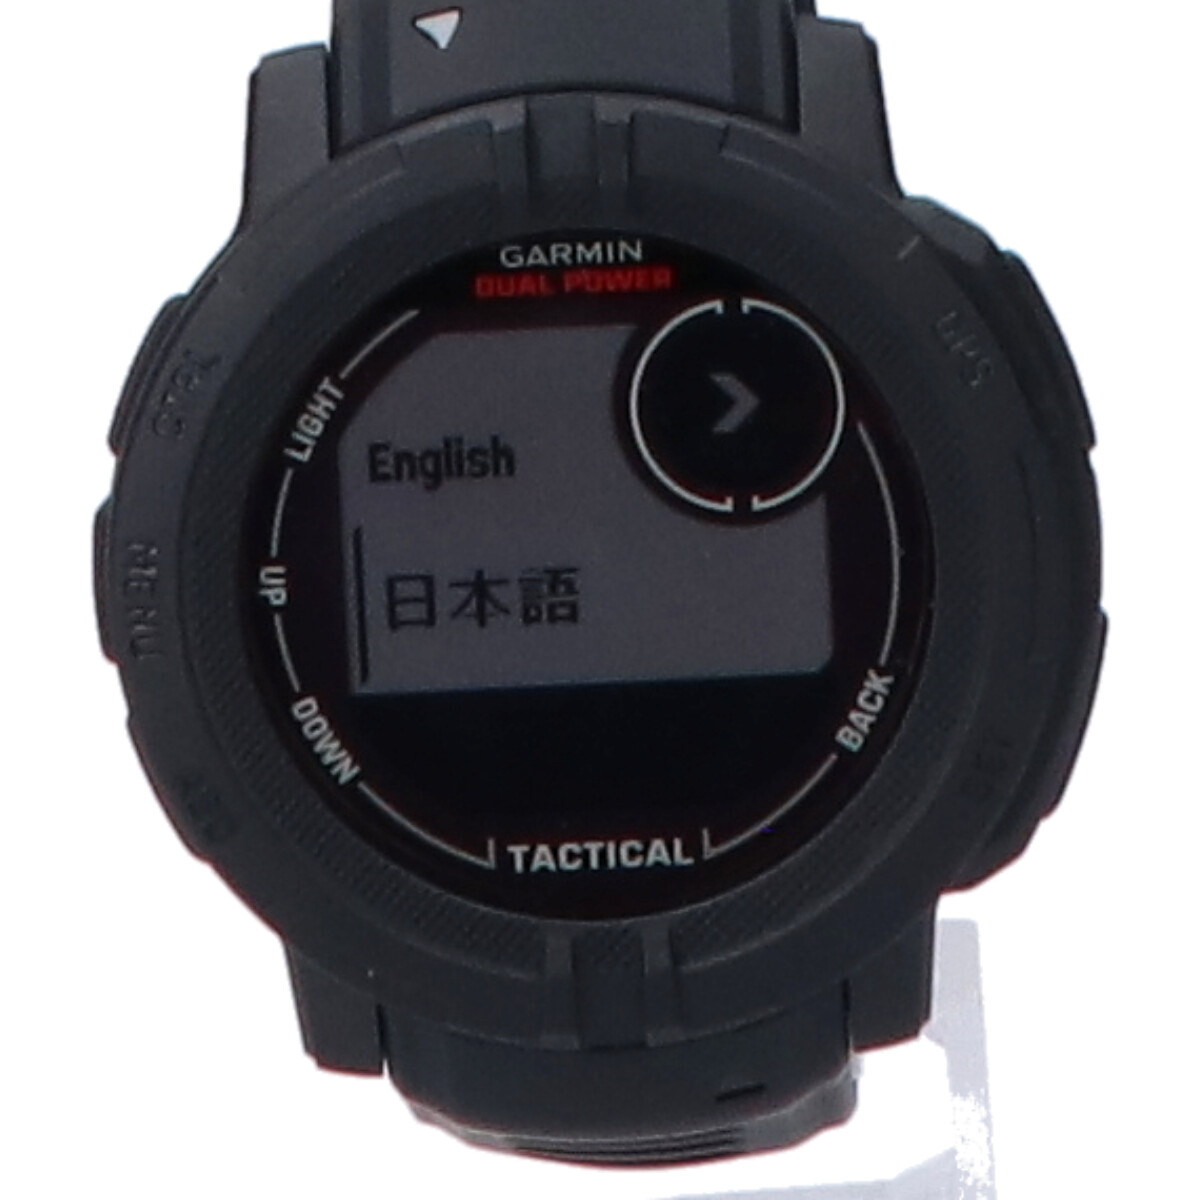 ガーミンの010-023627-43 Instinct 2 Dual Power タフネス GPS スマートウォッチ 腕時計 Tactical Edition Blackの買取実績です。